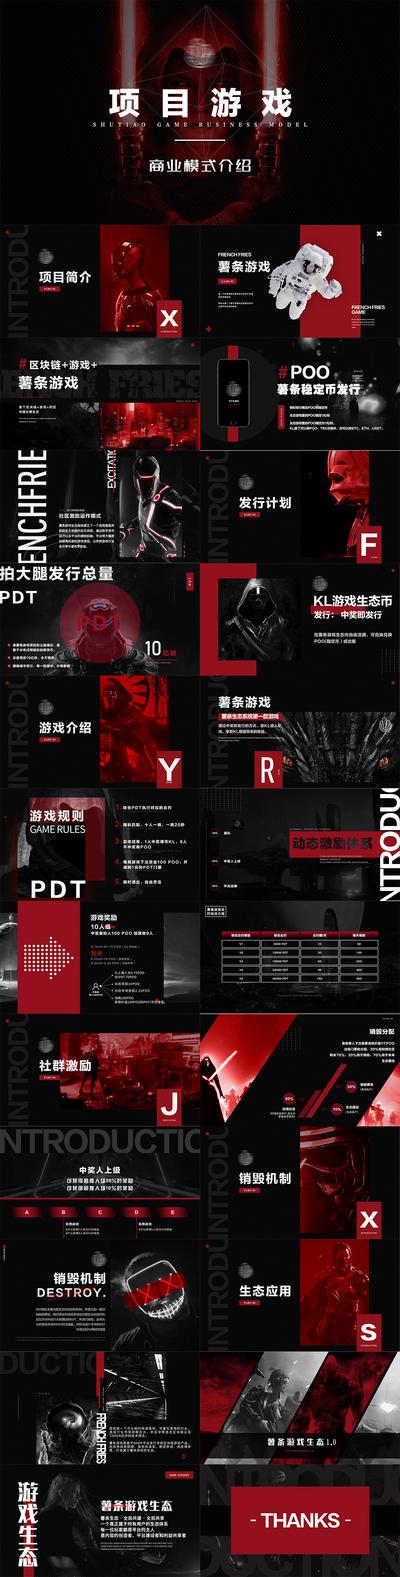 南门网 PPT 计划书 区块链 王者 游戏 商业 PDF 炫酷 红色 黑红